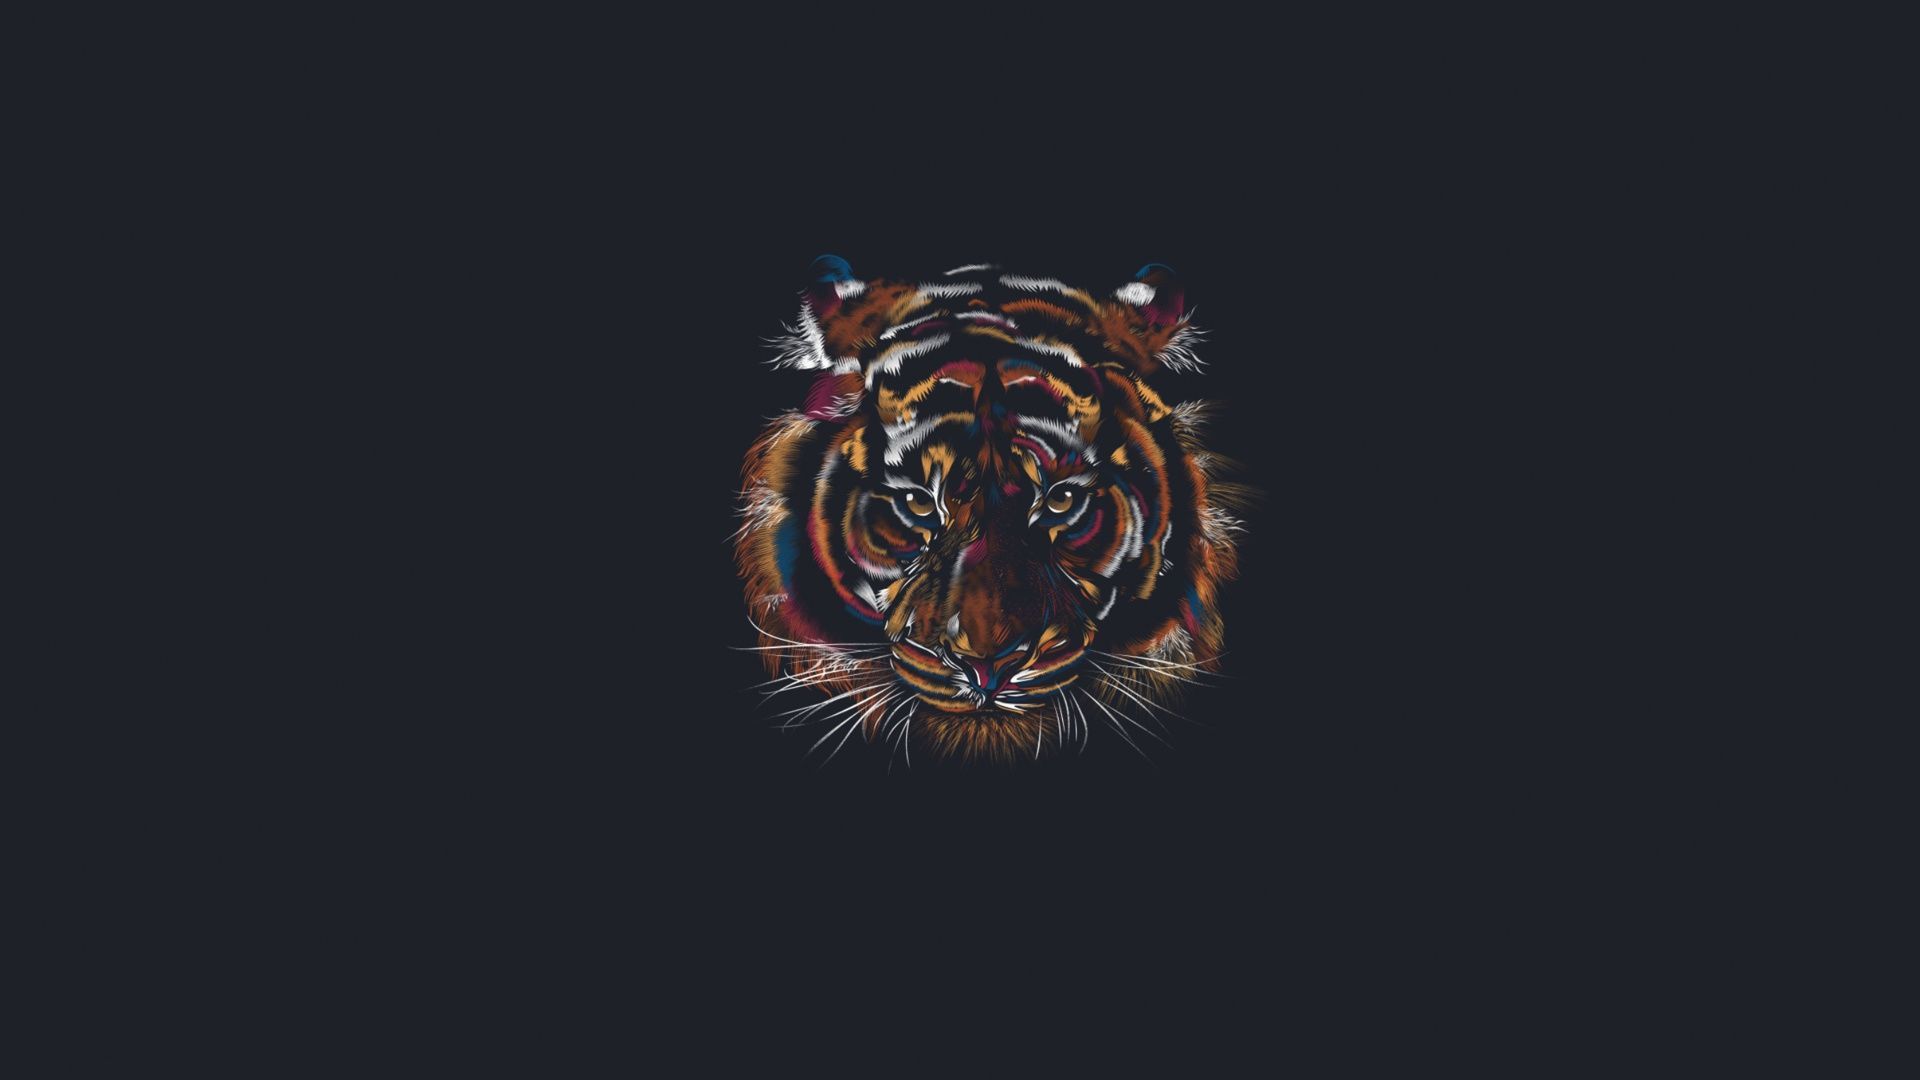 Minimalist Tiger Wallpaper Free Minimalist Tiger